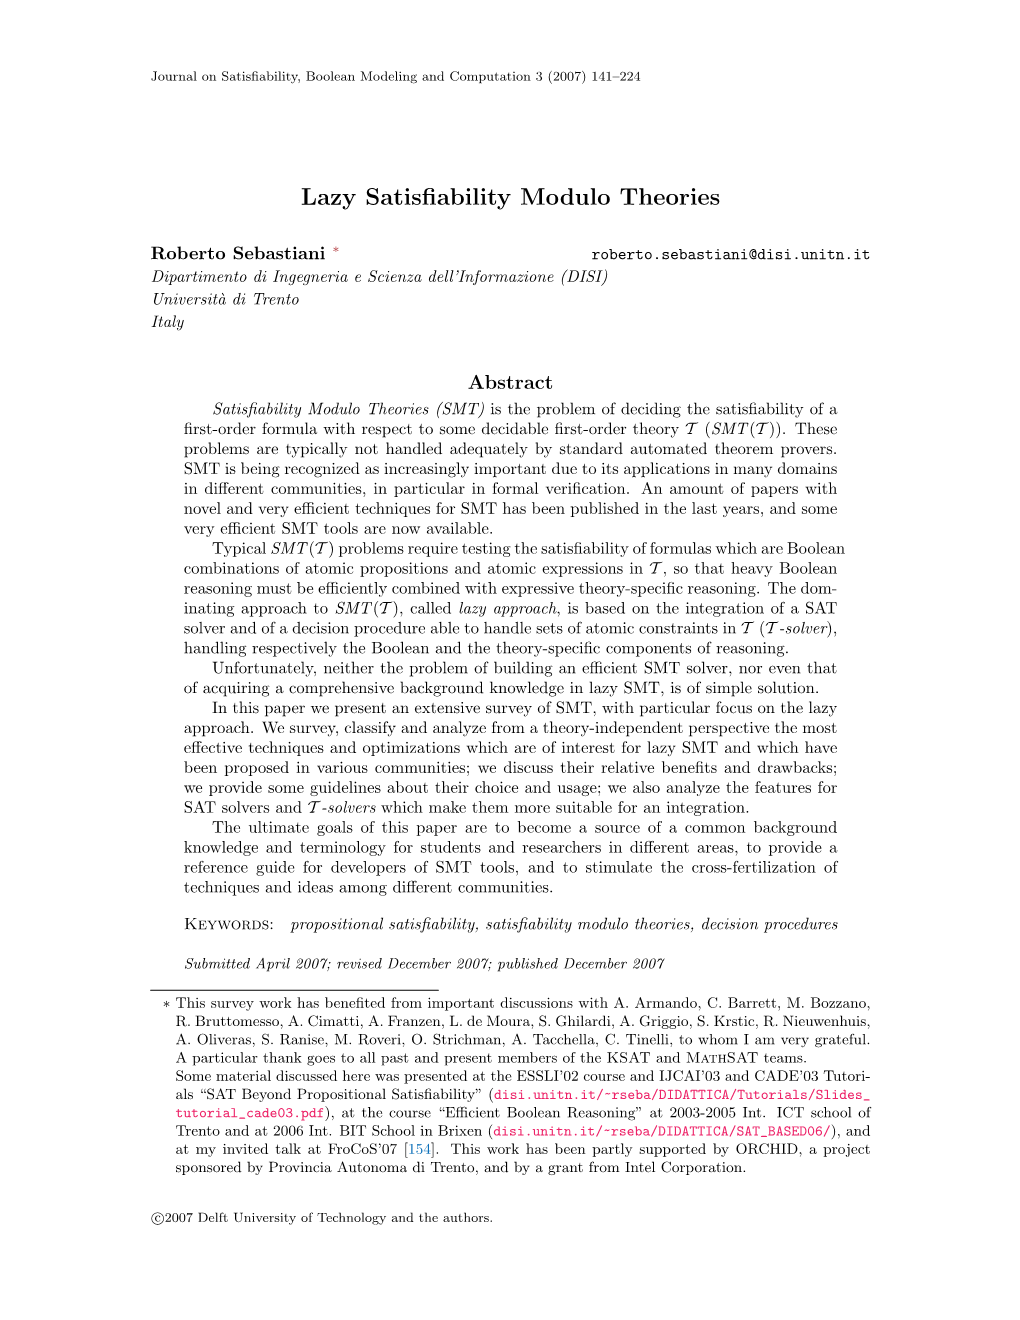 Lazy Satisfiability Modulo Theories